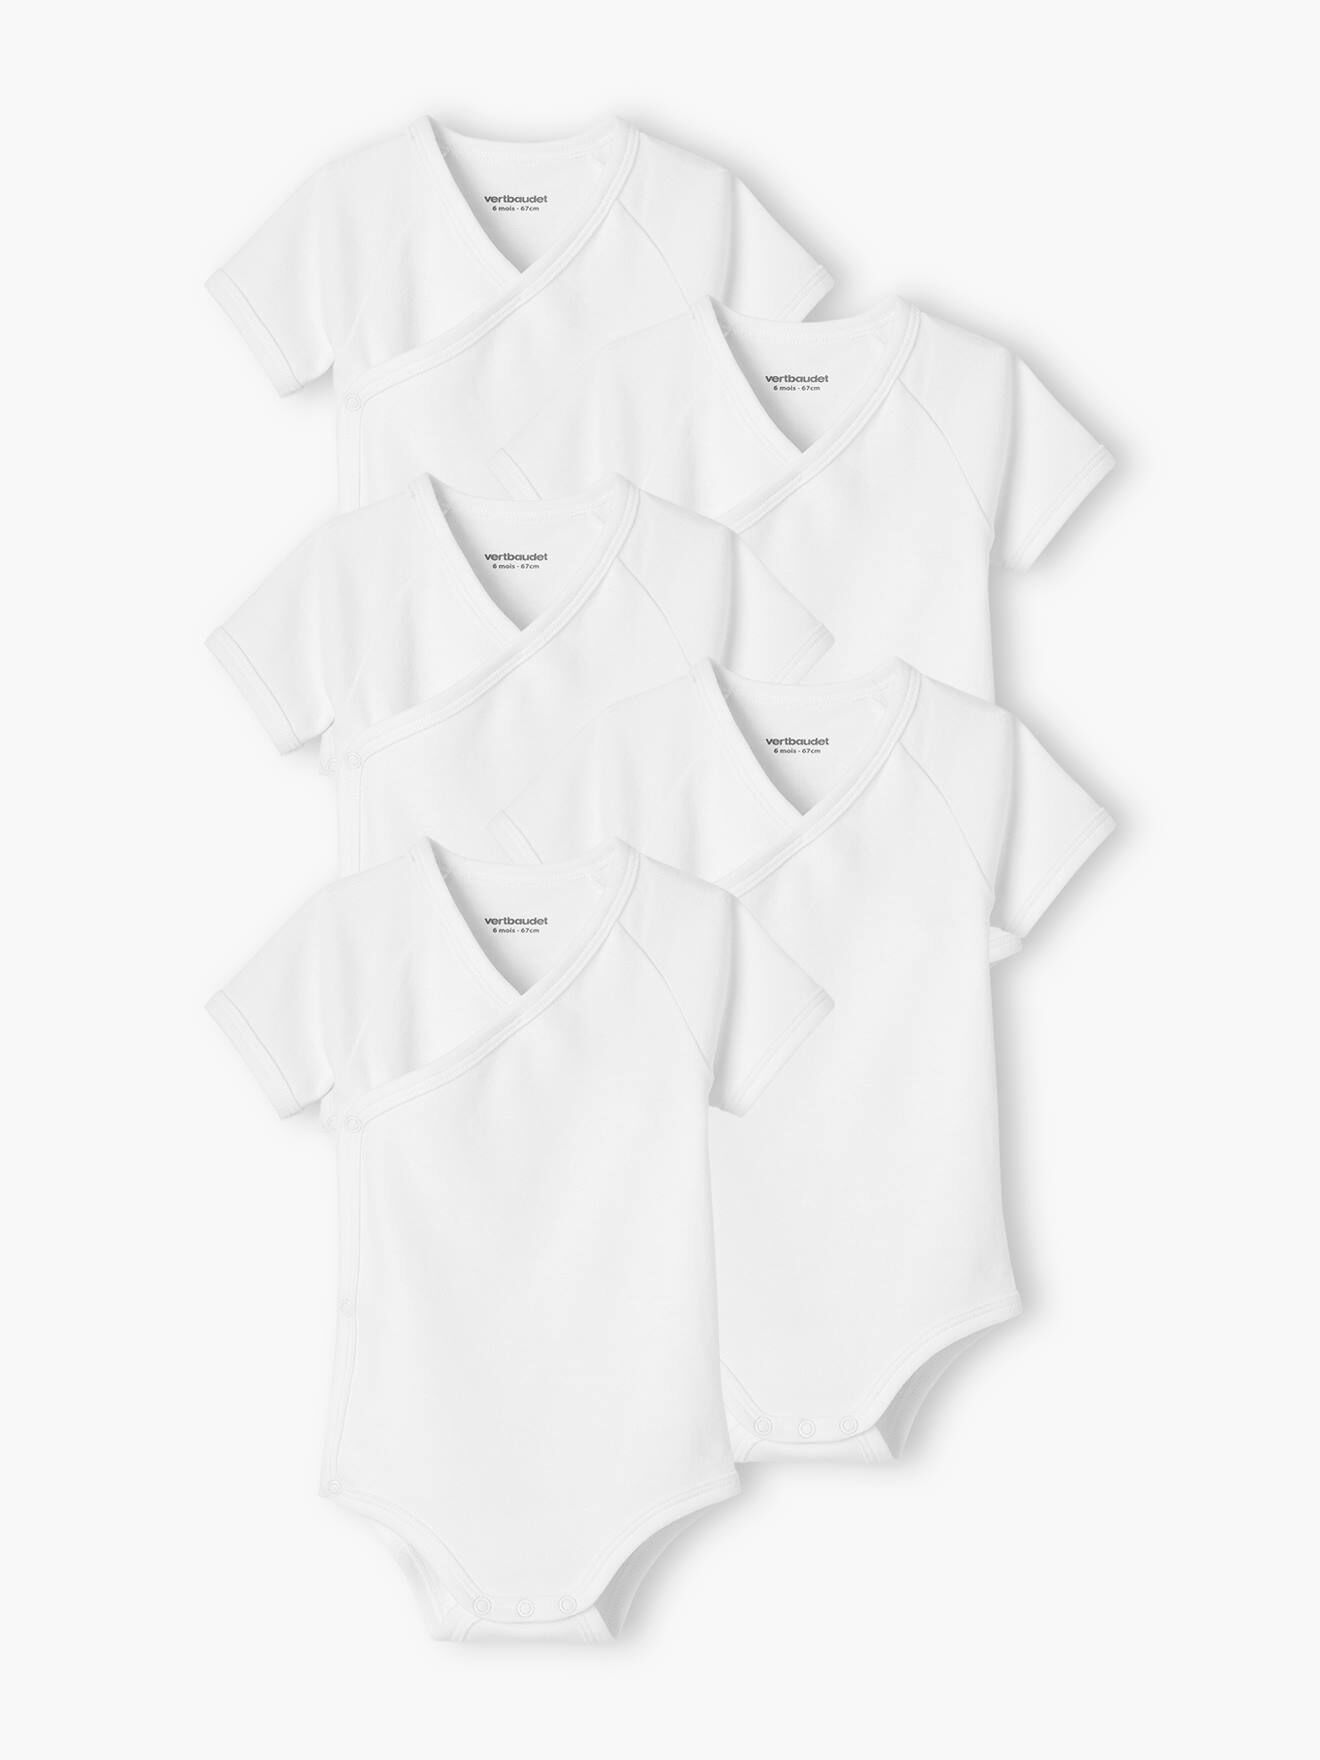 VERTBAUDET Pack de 5 bodies de manga corta con abertura, para recién nacido blanco claro bicolor/multicolo